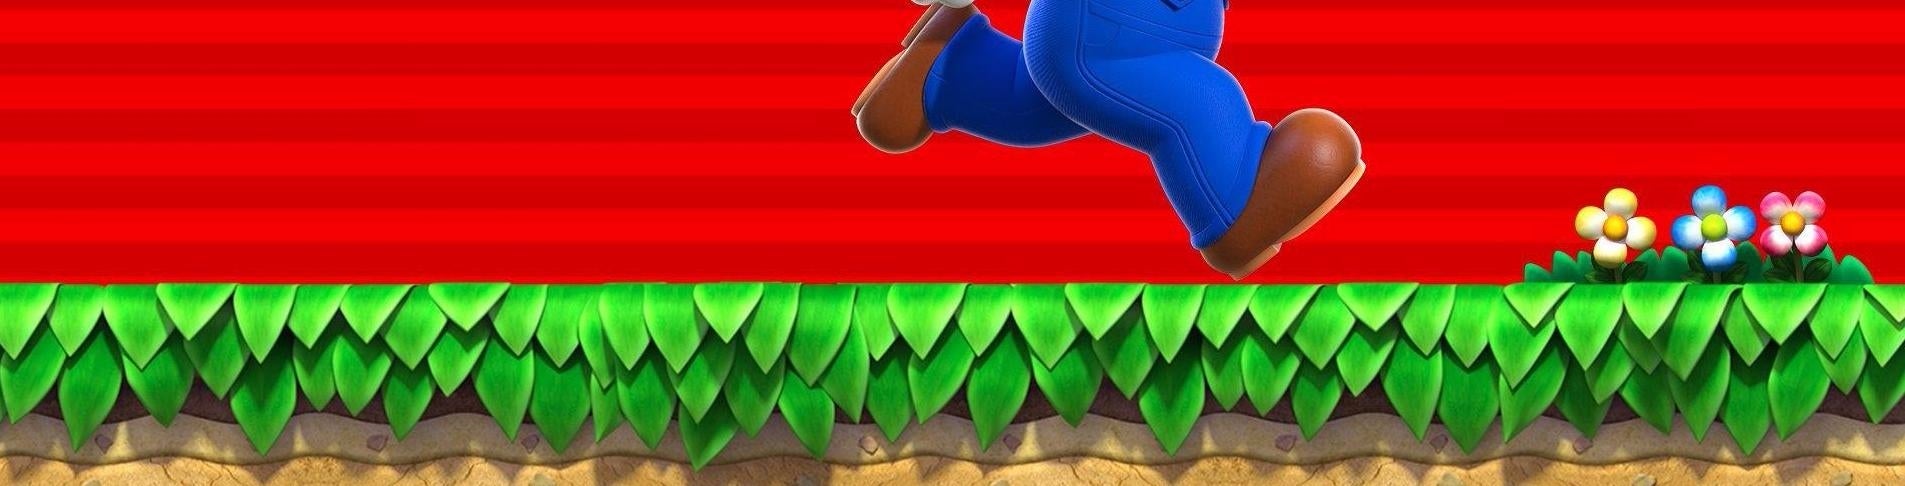 Imagen para Avance de Super Mario Run